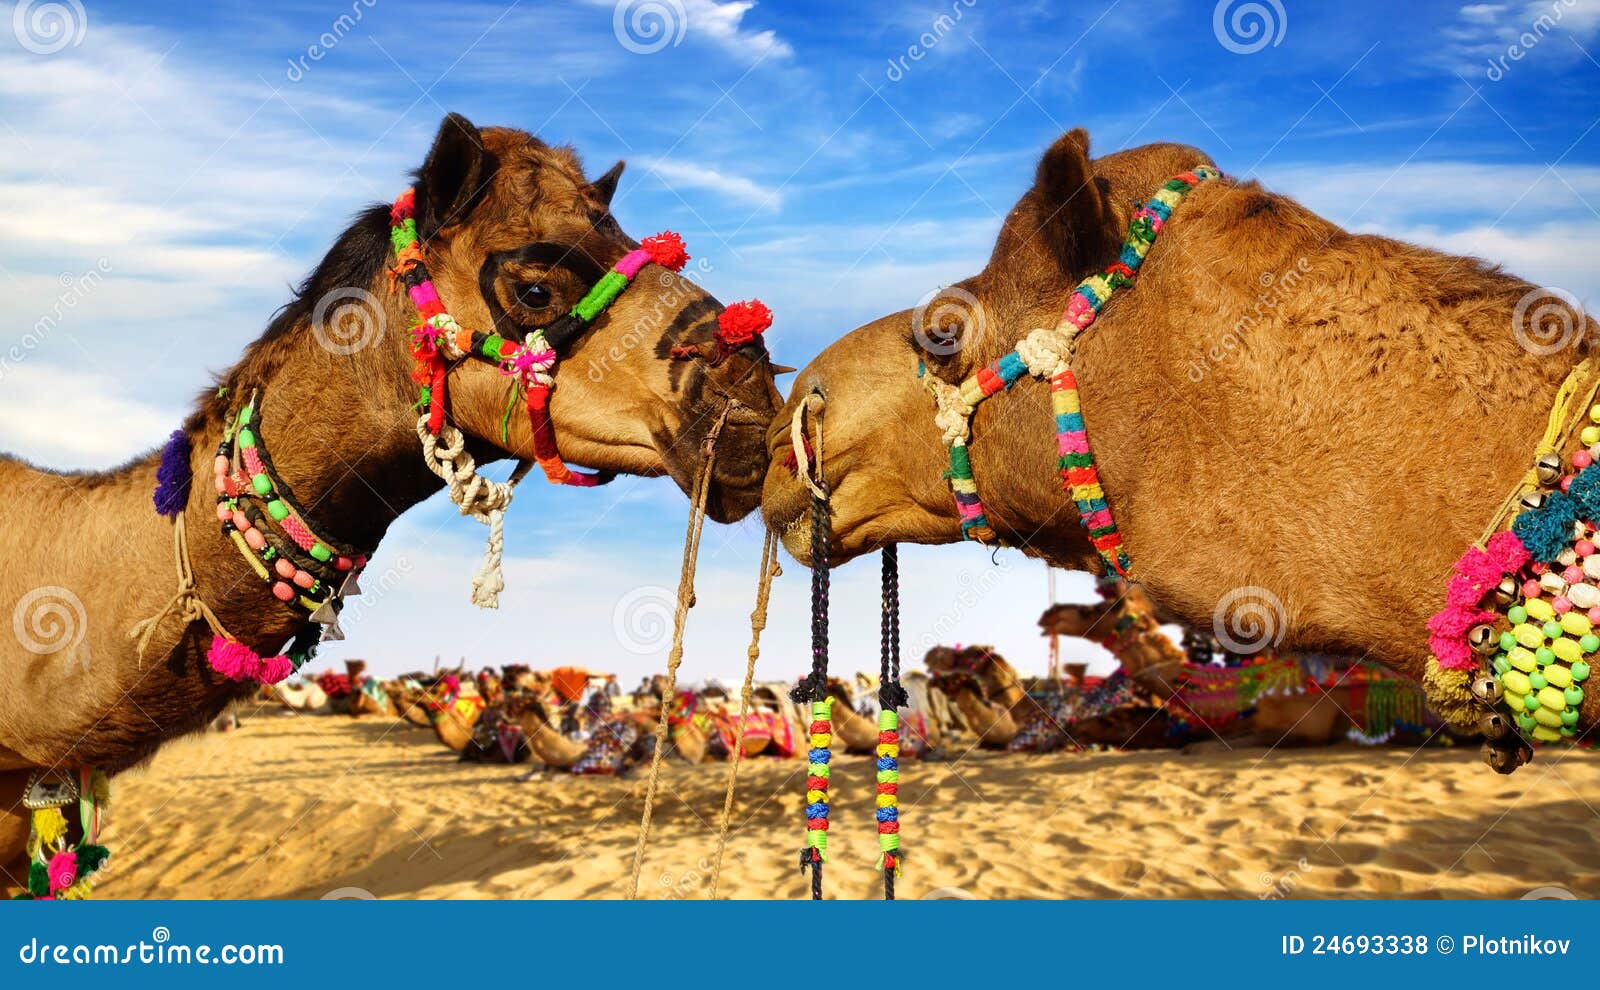 camel festival in bikaner, india